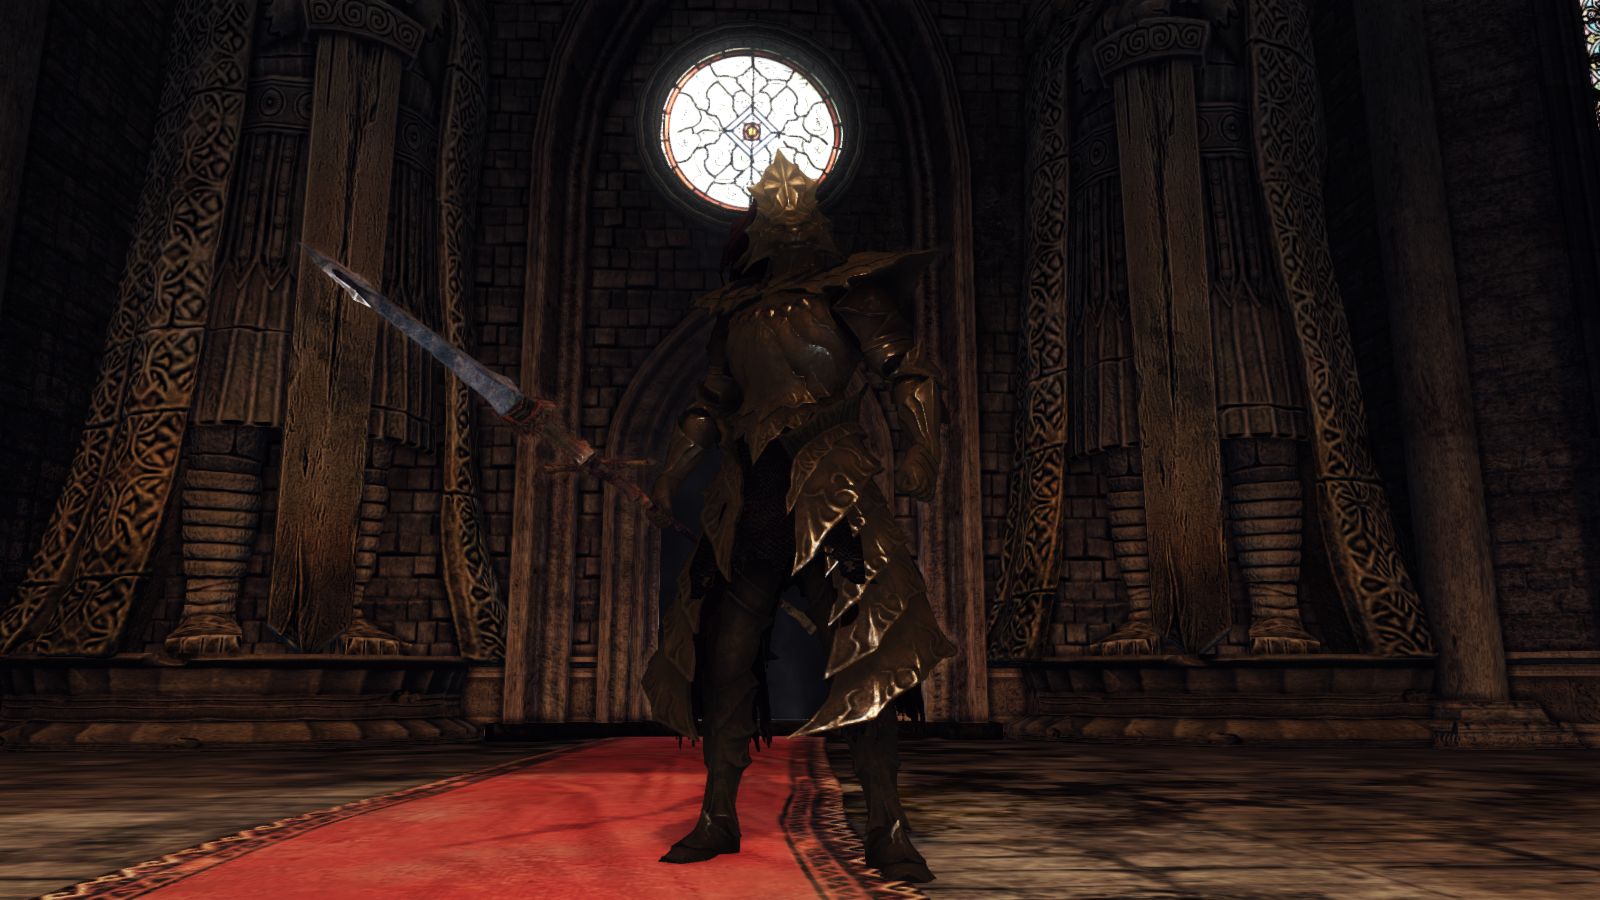 Dark Souls 2 Scholar of the Second Sin Visual Overhaul Mod is now